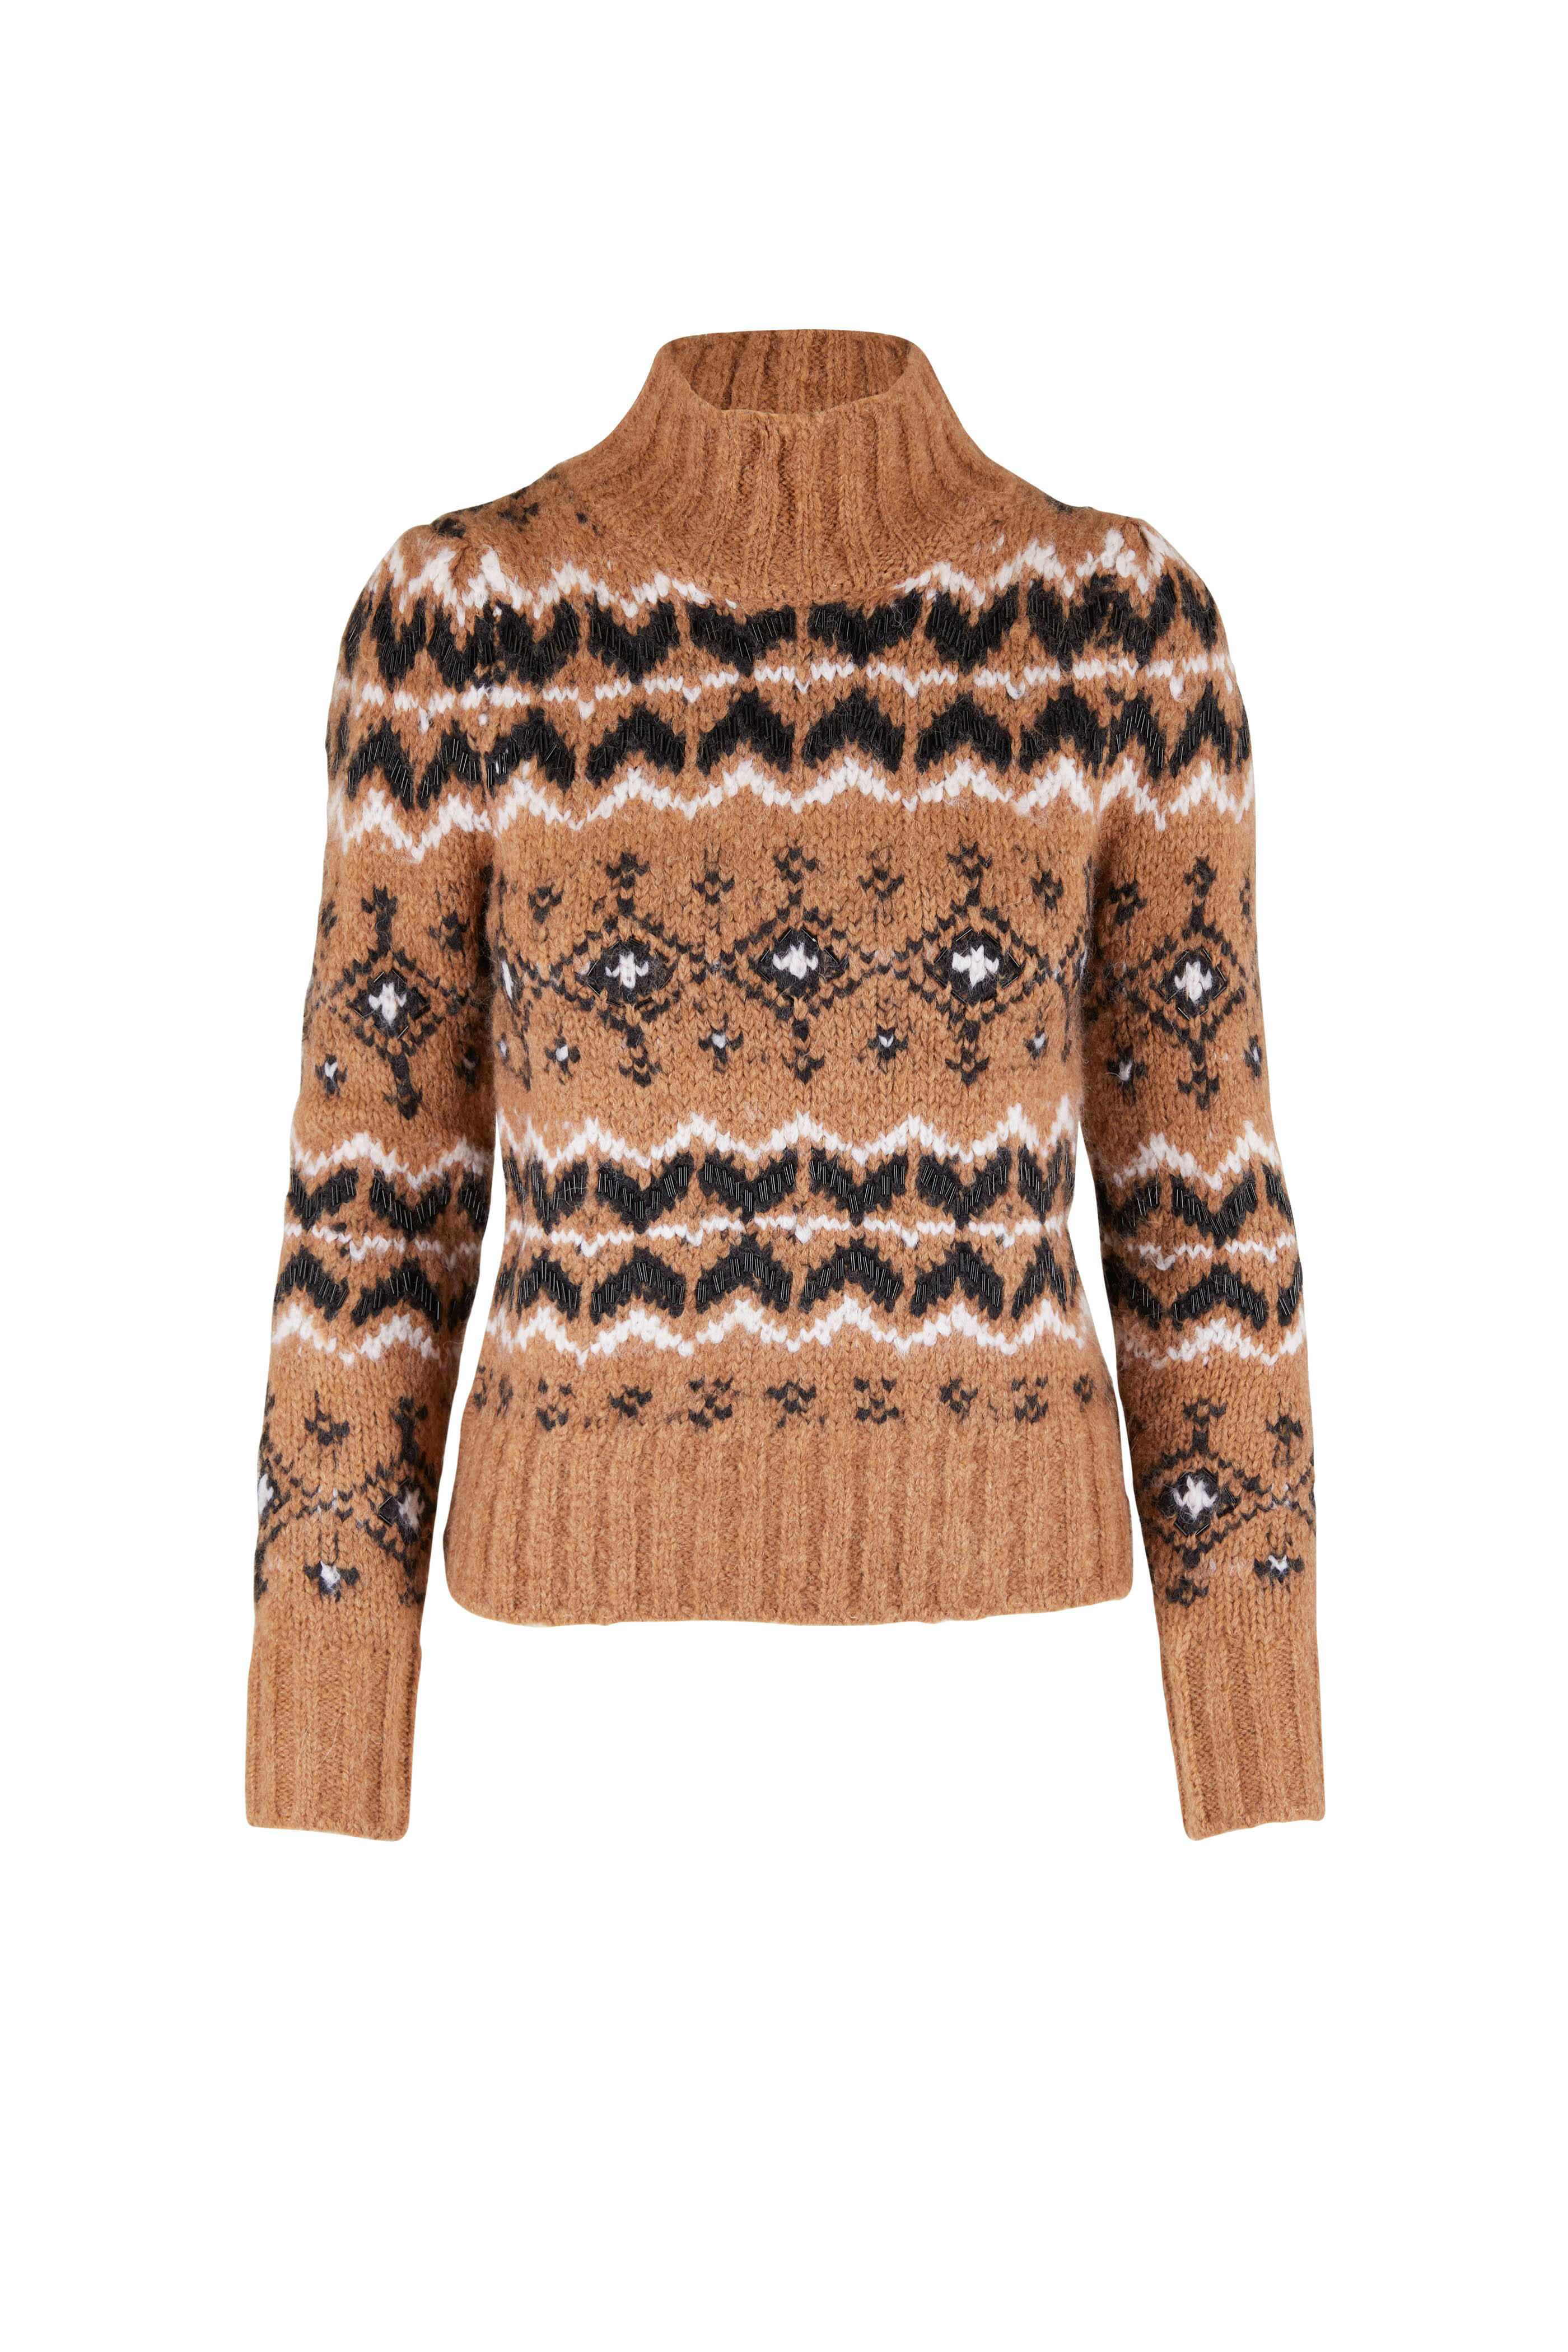 Veronica Beard - Chiana Multicolor Fairisle Turtleneck Sweater